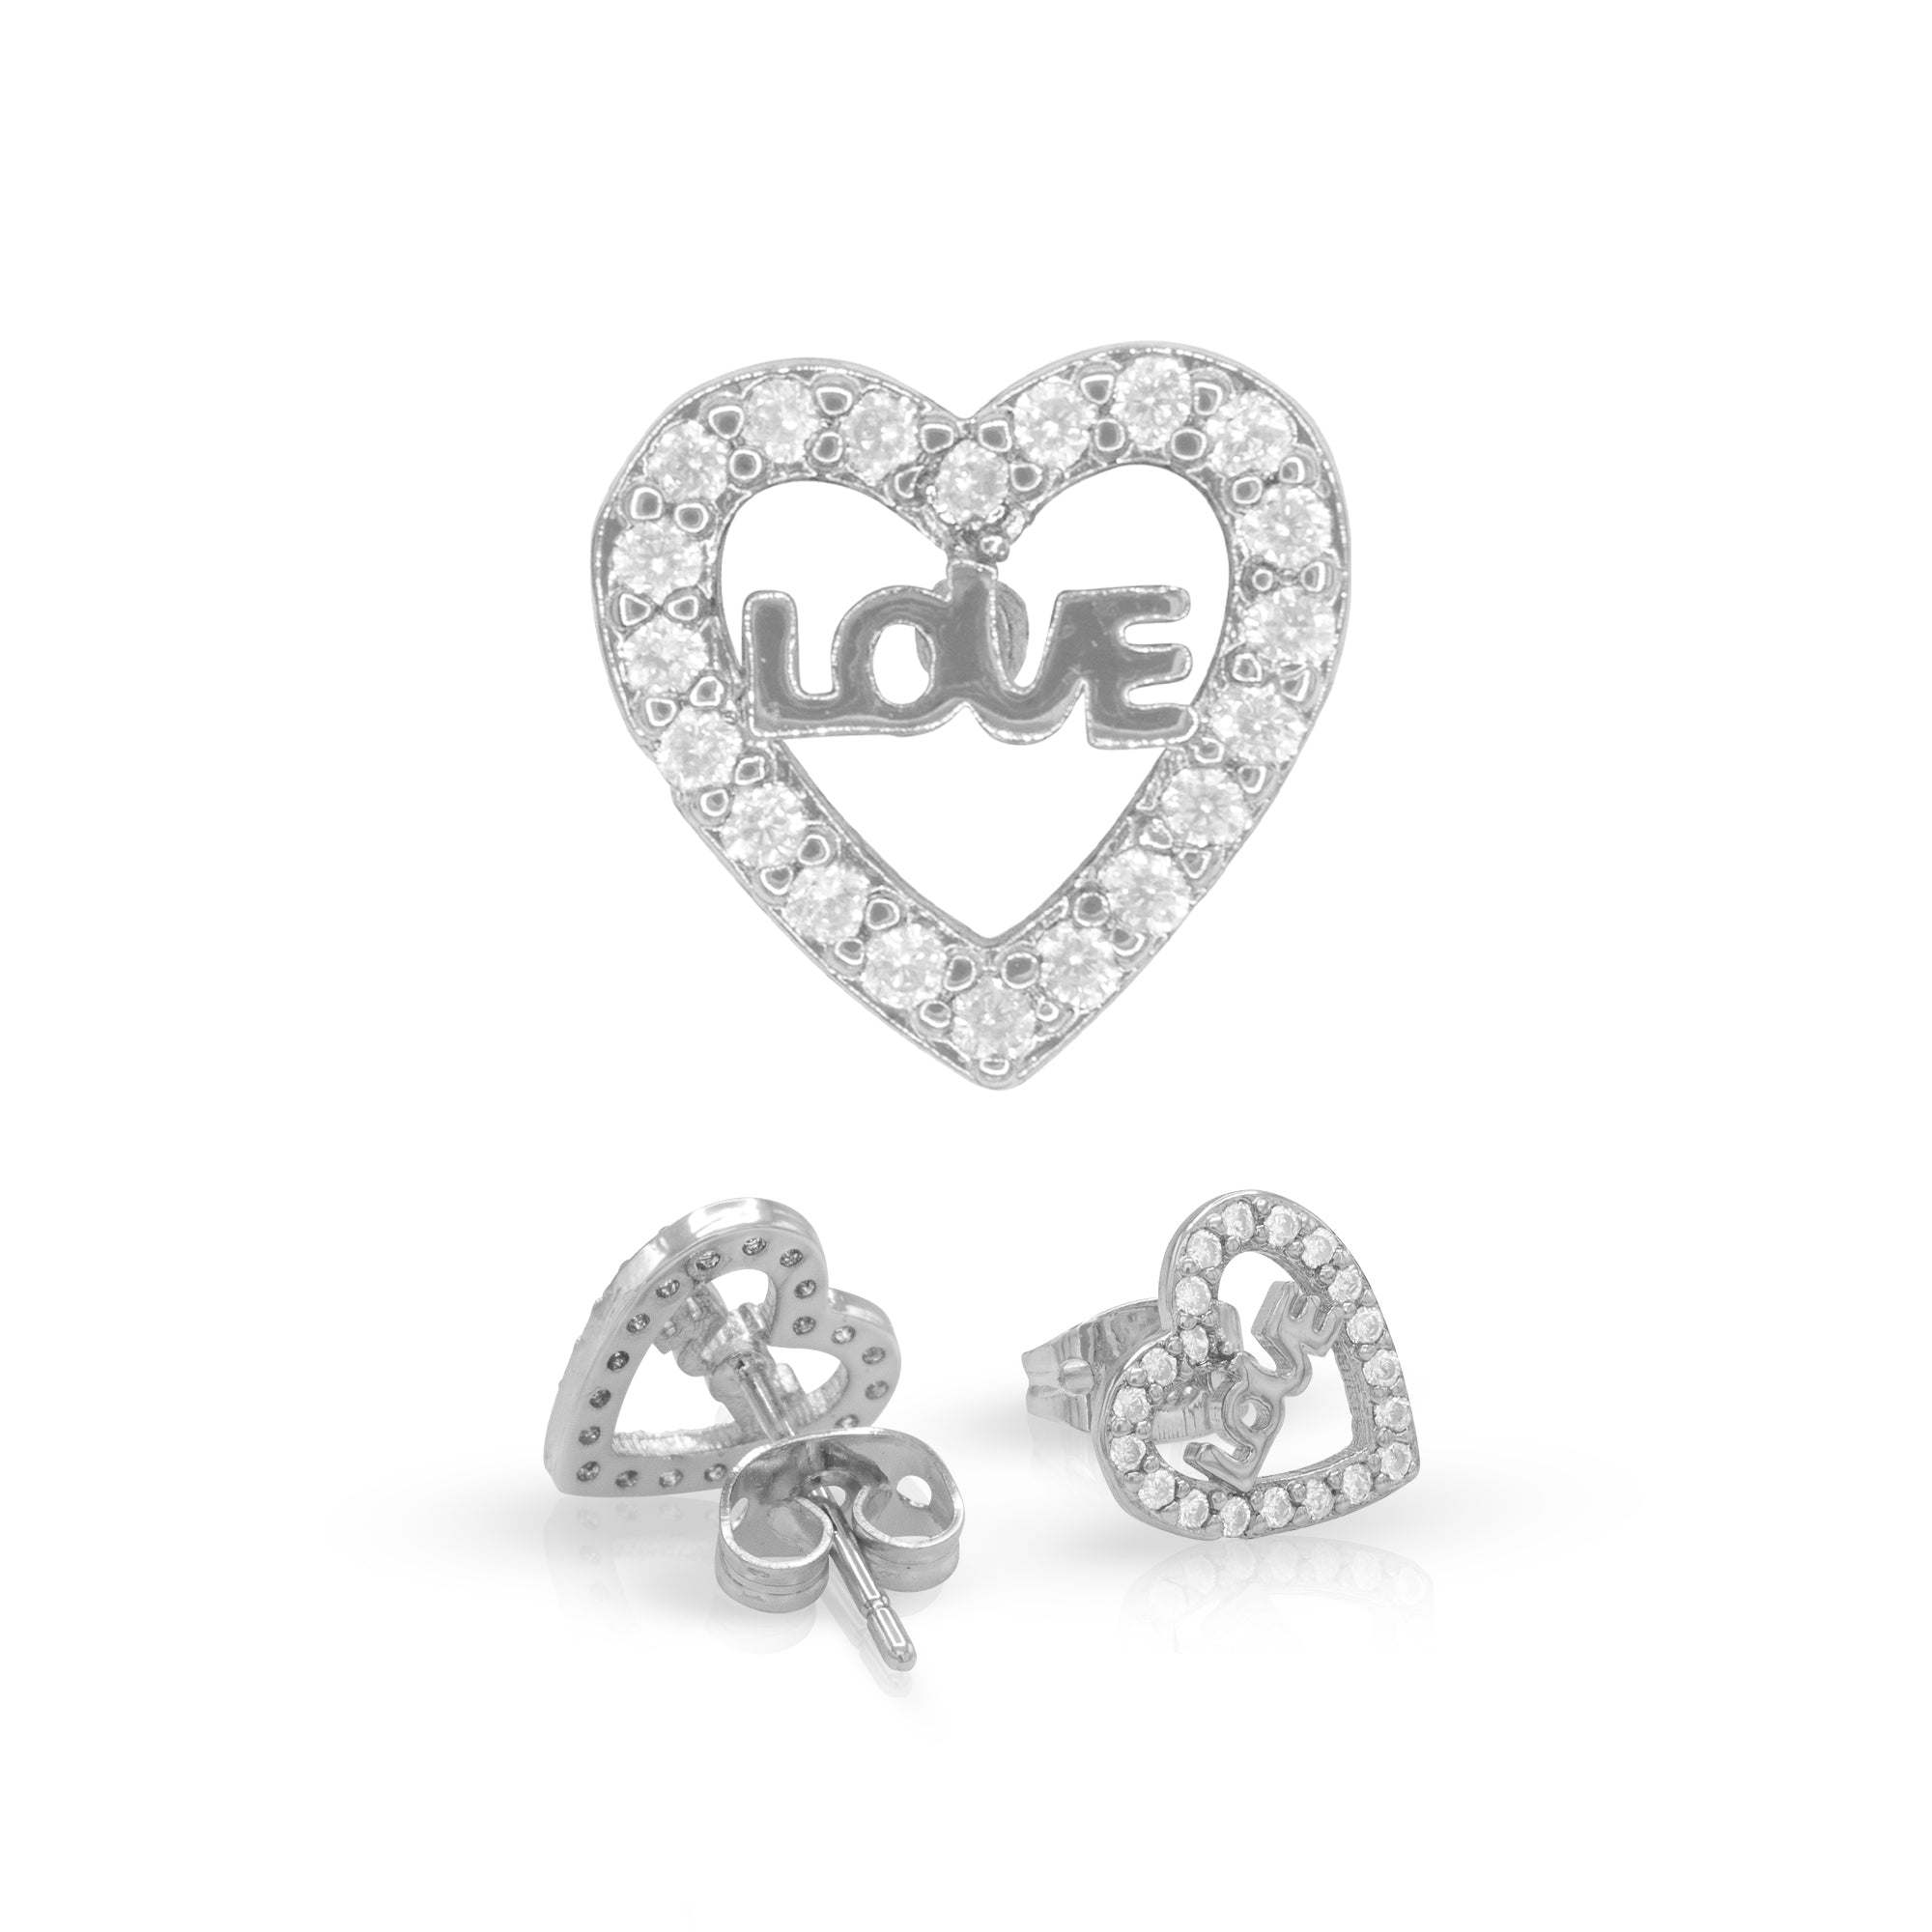 Heart 14 Cubic Zirconia Earrings 14K Gold Filled Silver Hip Hop Studs Jewelry Women